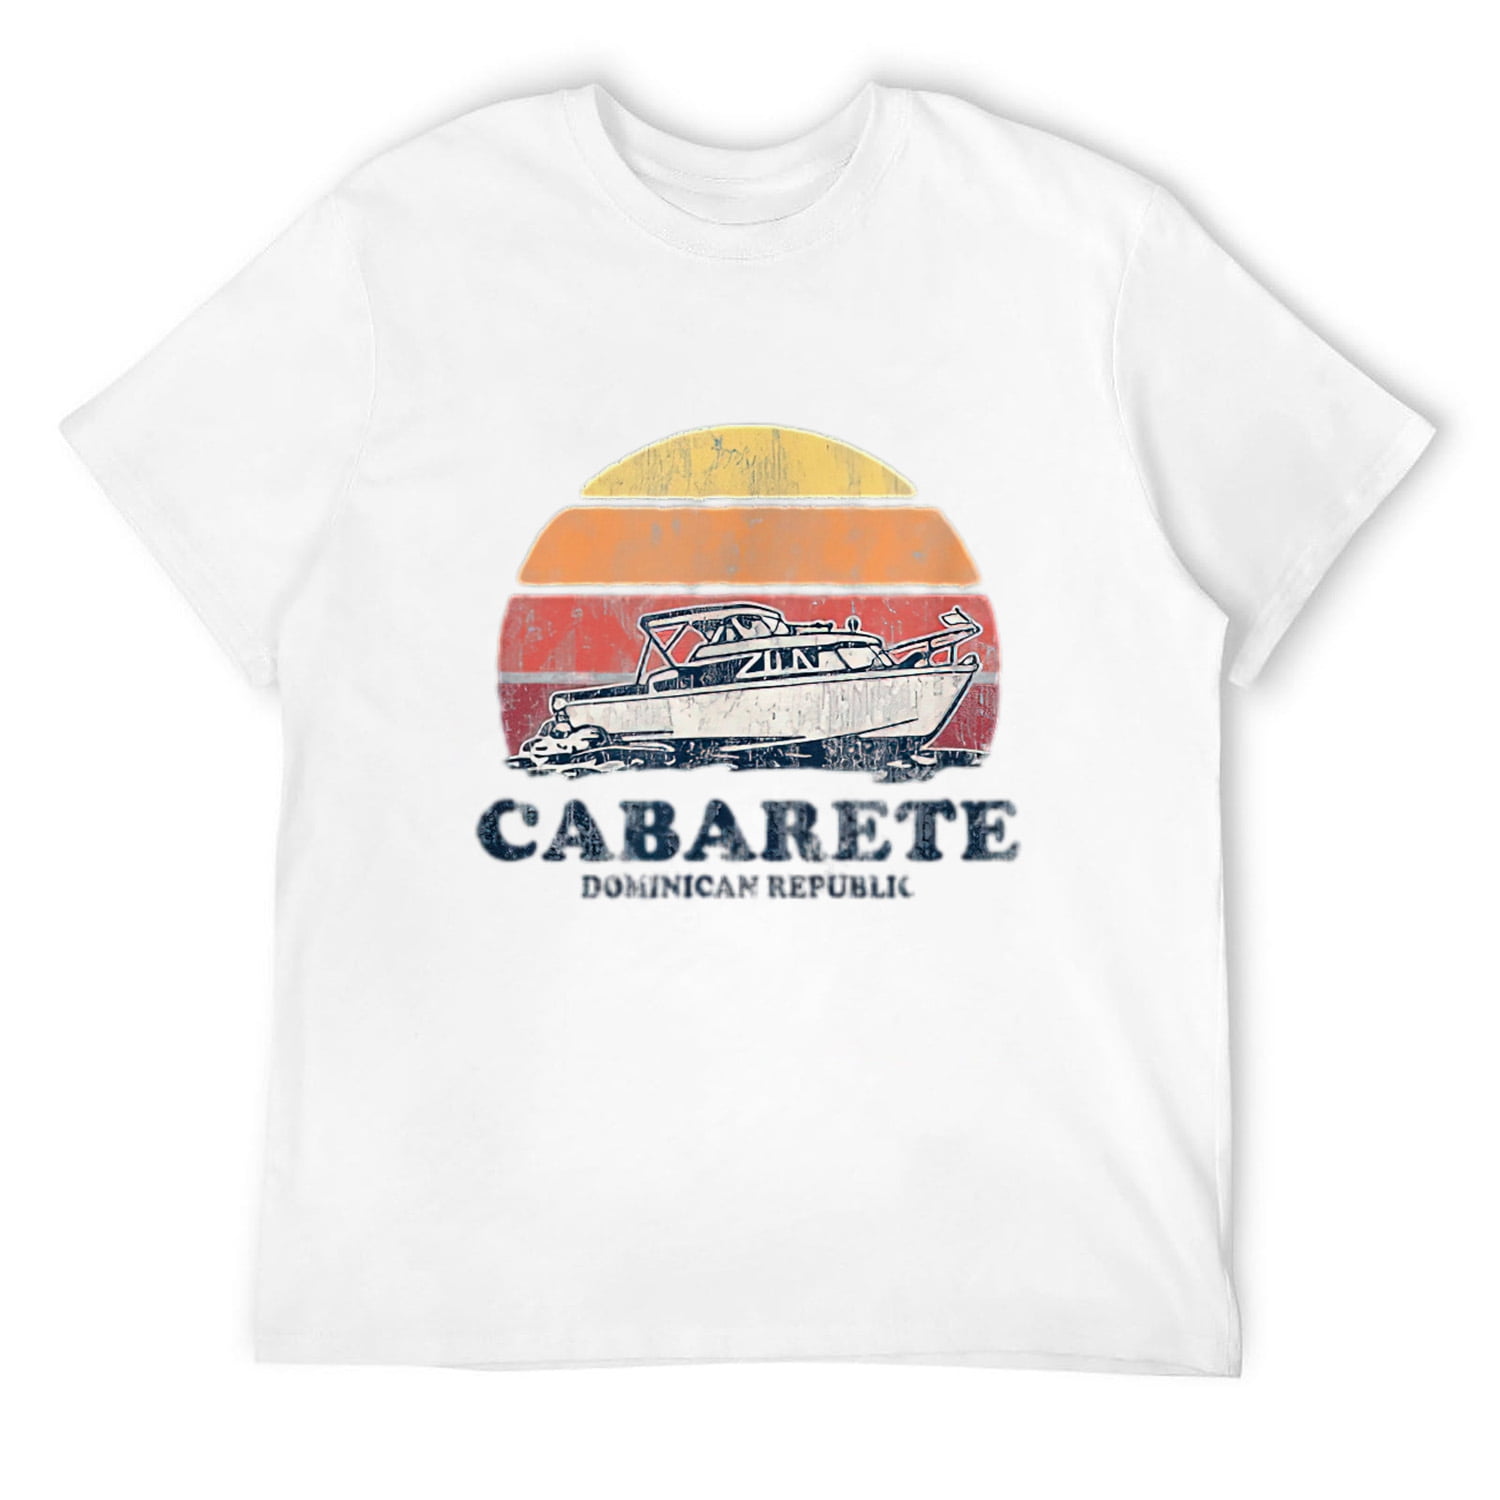 Cabarete Vintage Boating 70s Retro Boat Design T-Shirt White 4X-Large ...